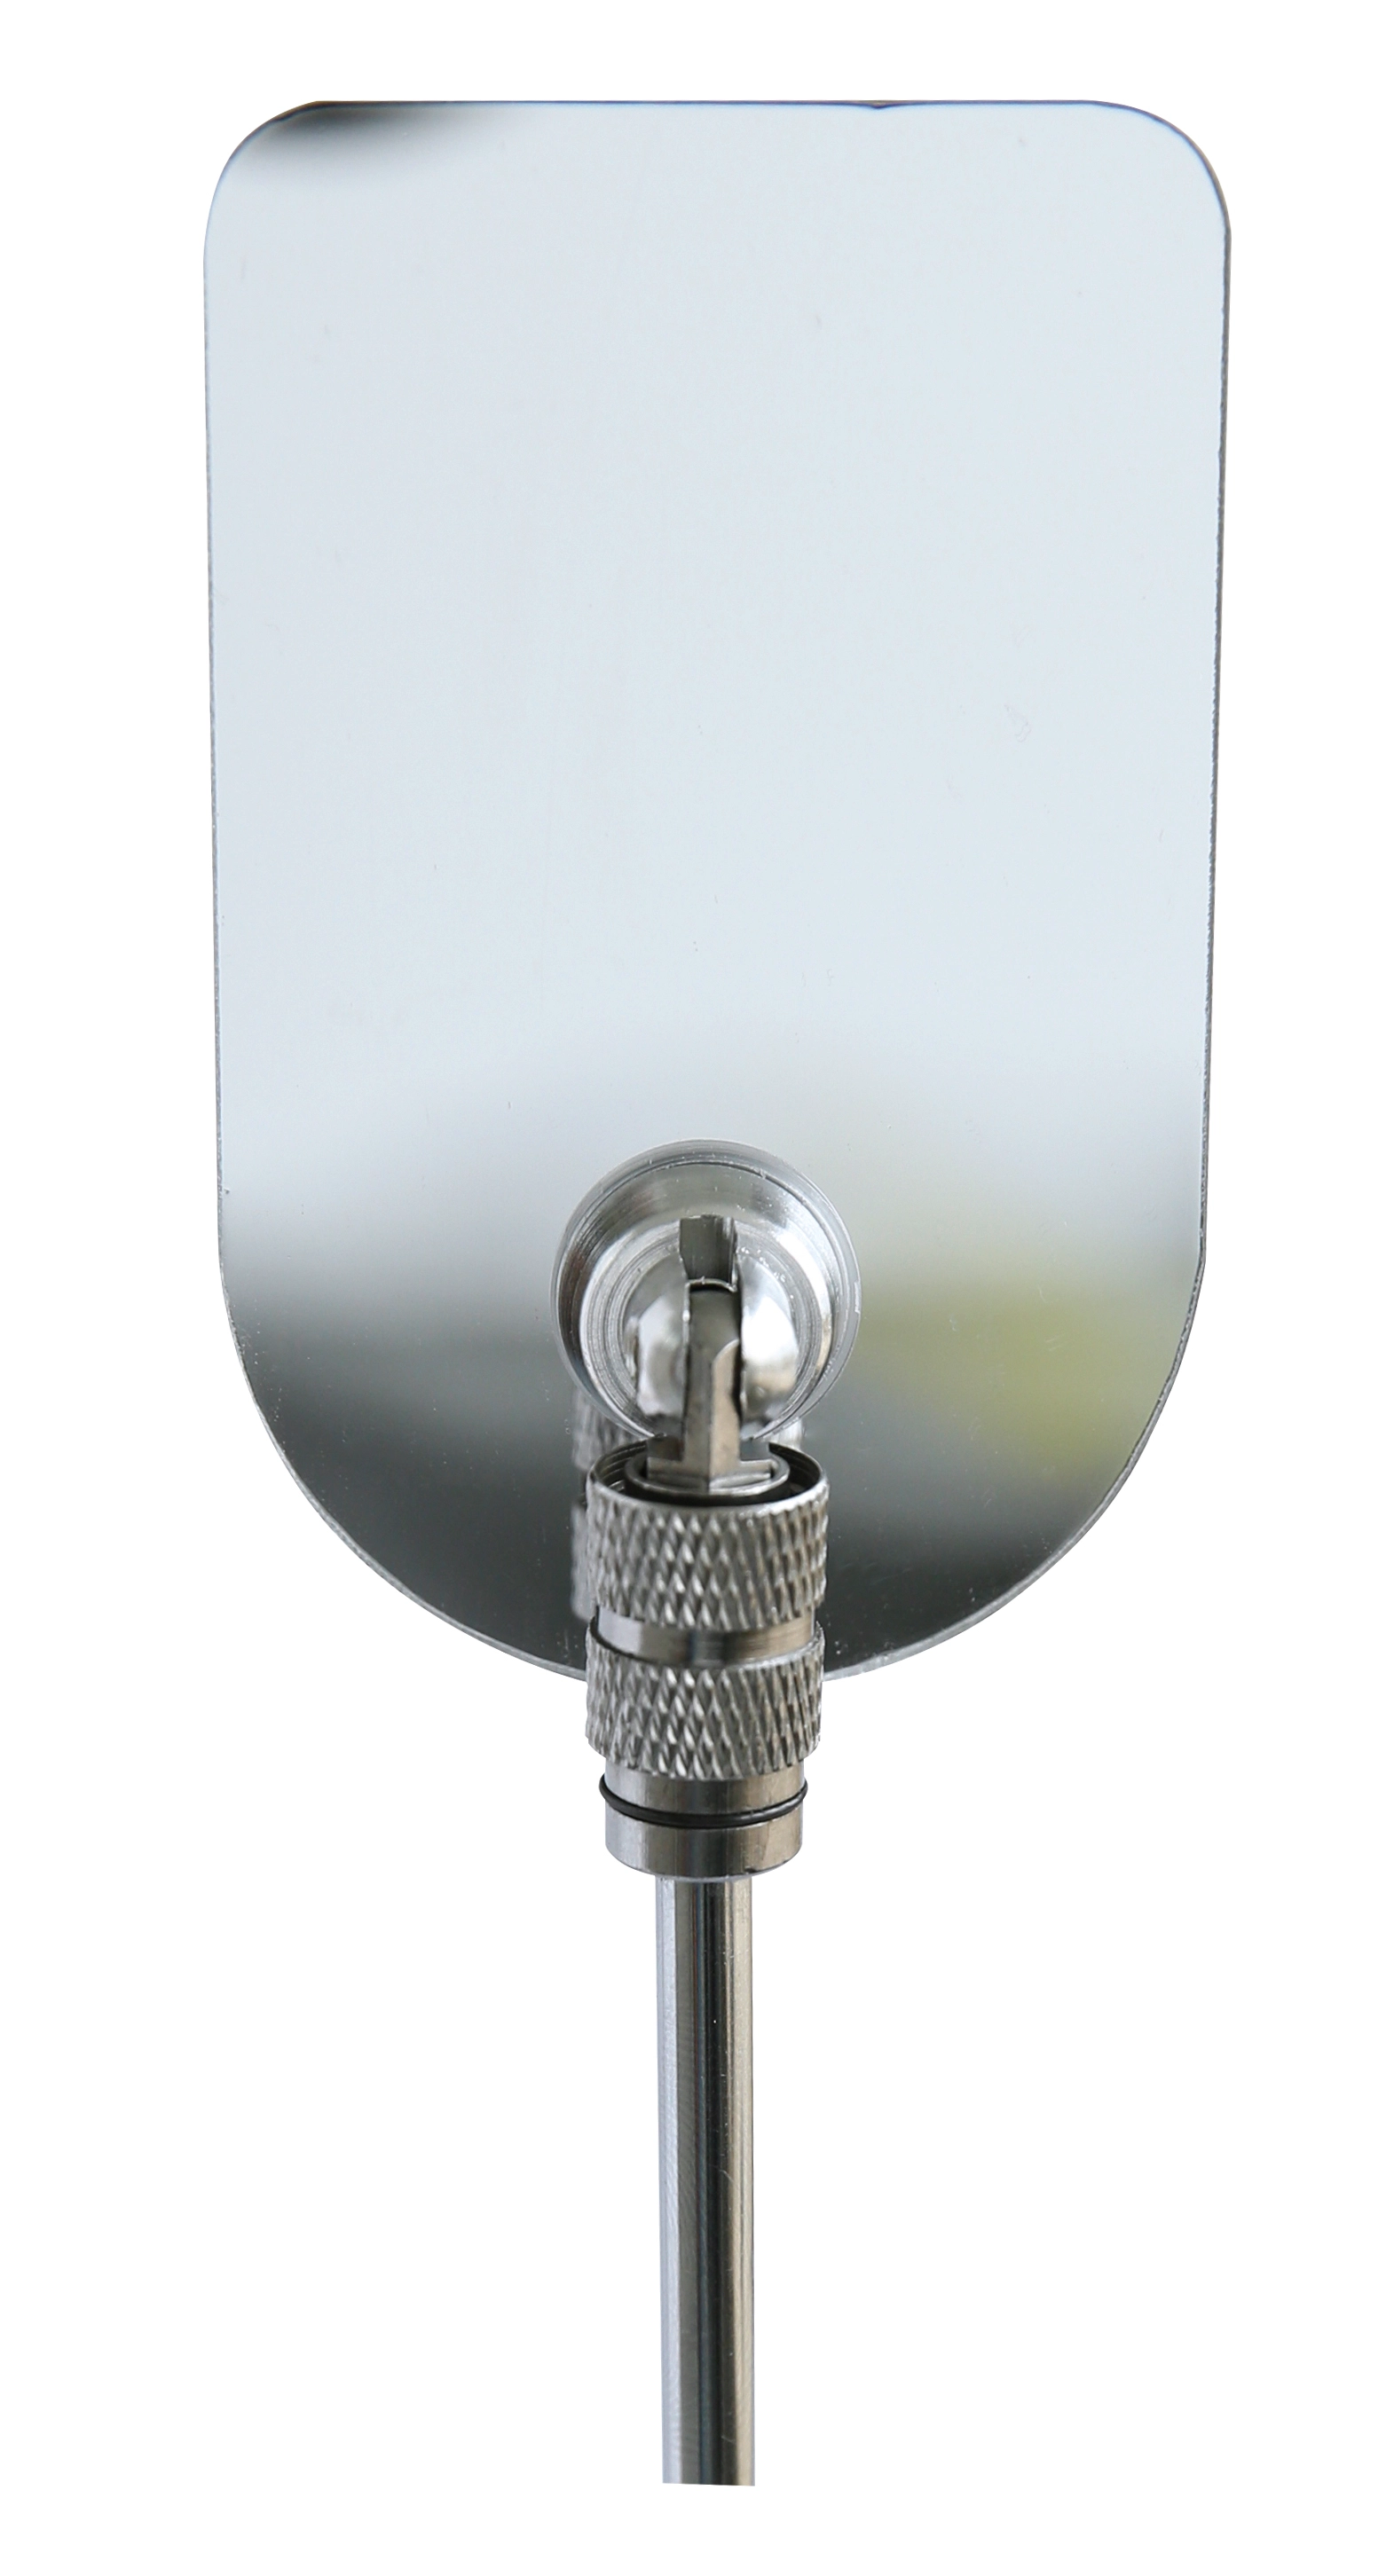 Inspektionsspiegel mit Teleskopgriff Spiegel-Ø 50 mm, Länge 240 - 680 mm